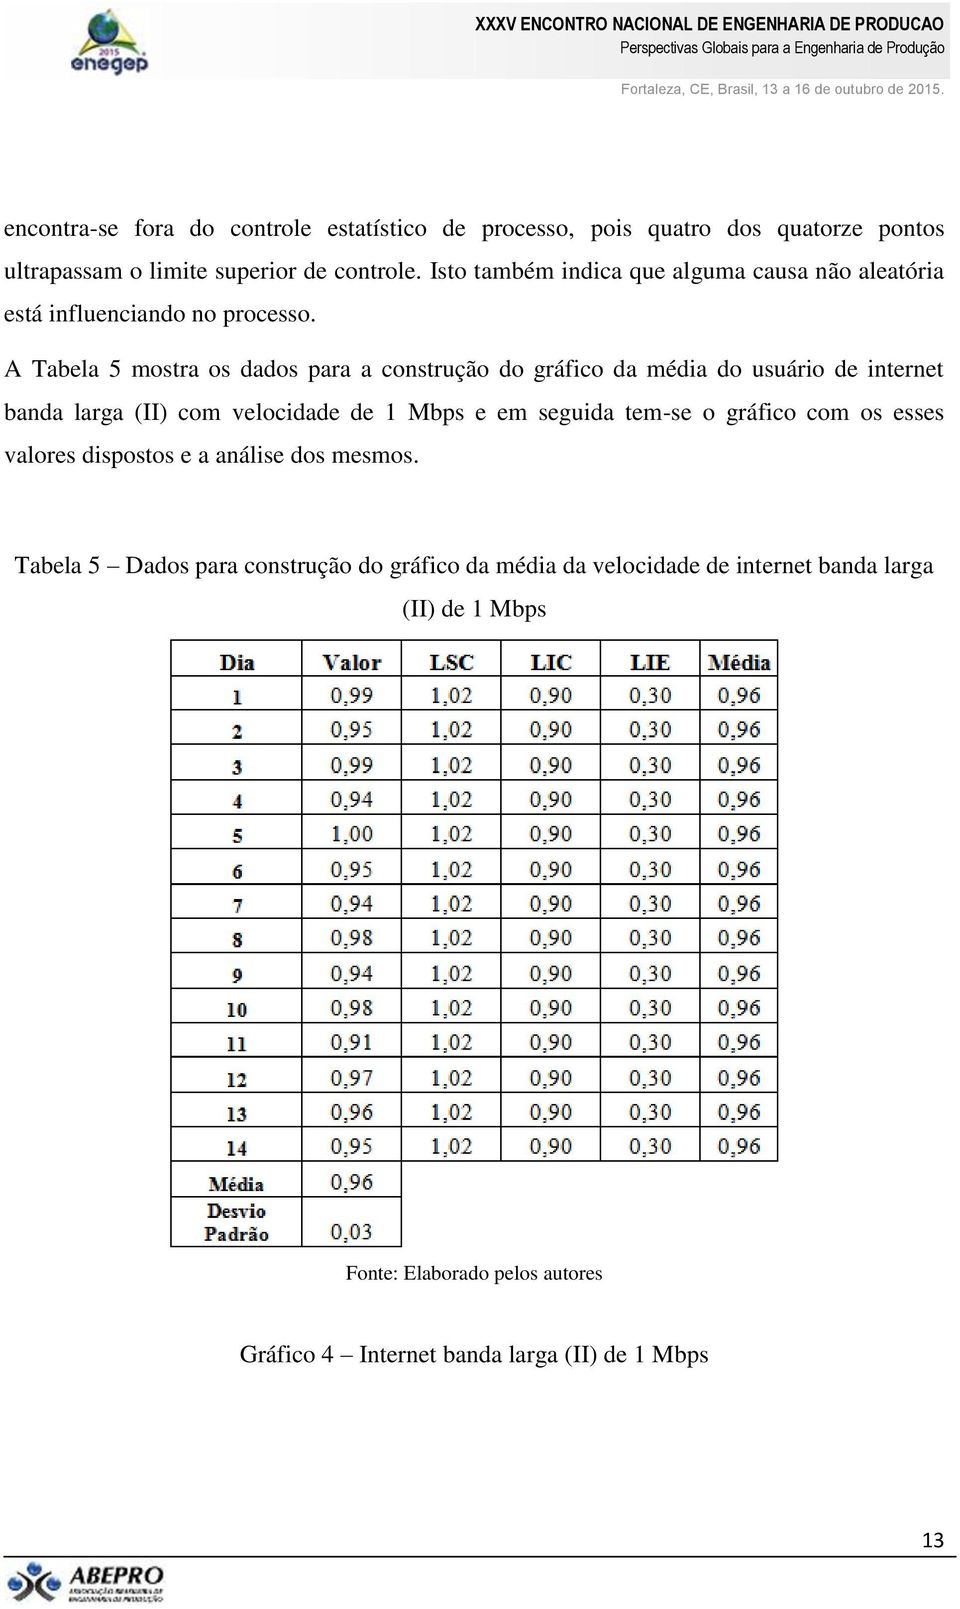 A Tabela 5 mostra os dados para a construção do gráfico da média do usuário de internet banda larga (II) com velocidade de 1 Mbps e em seguida